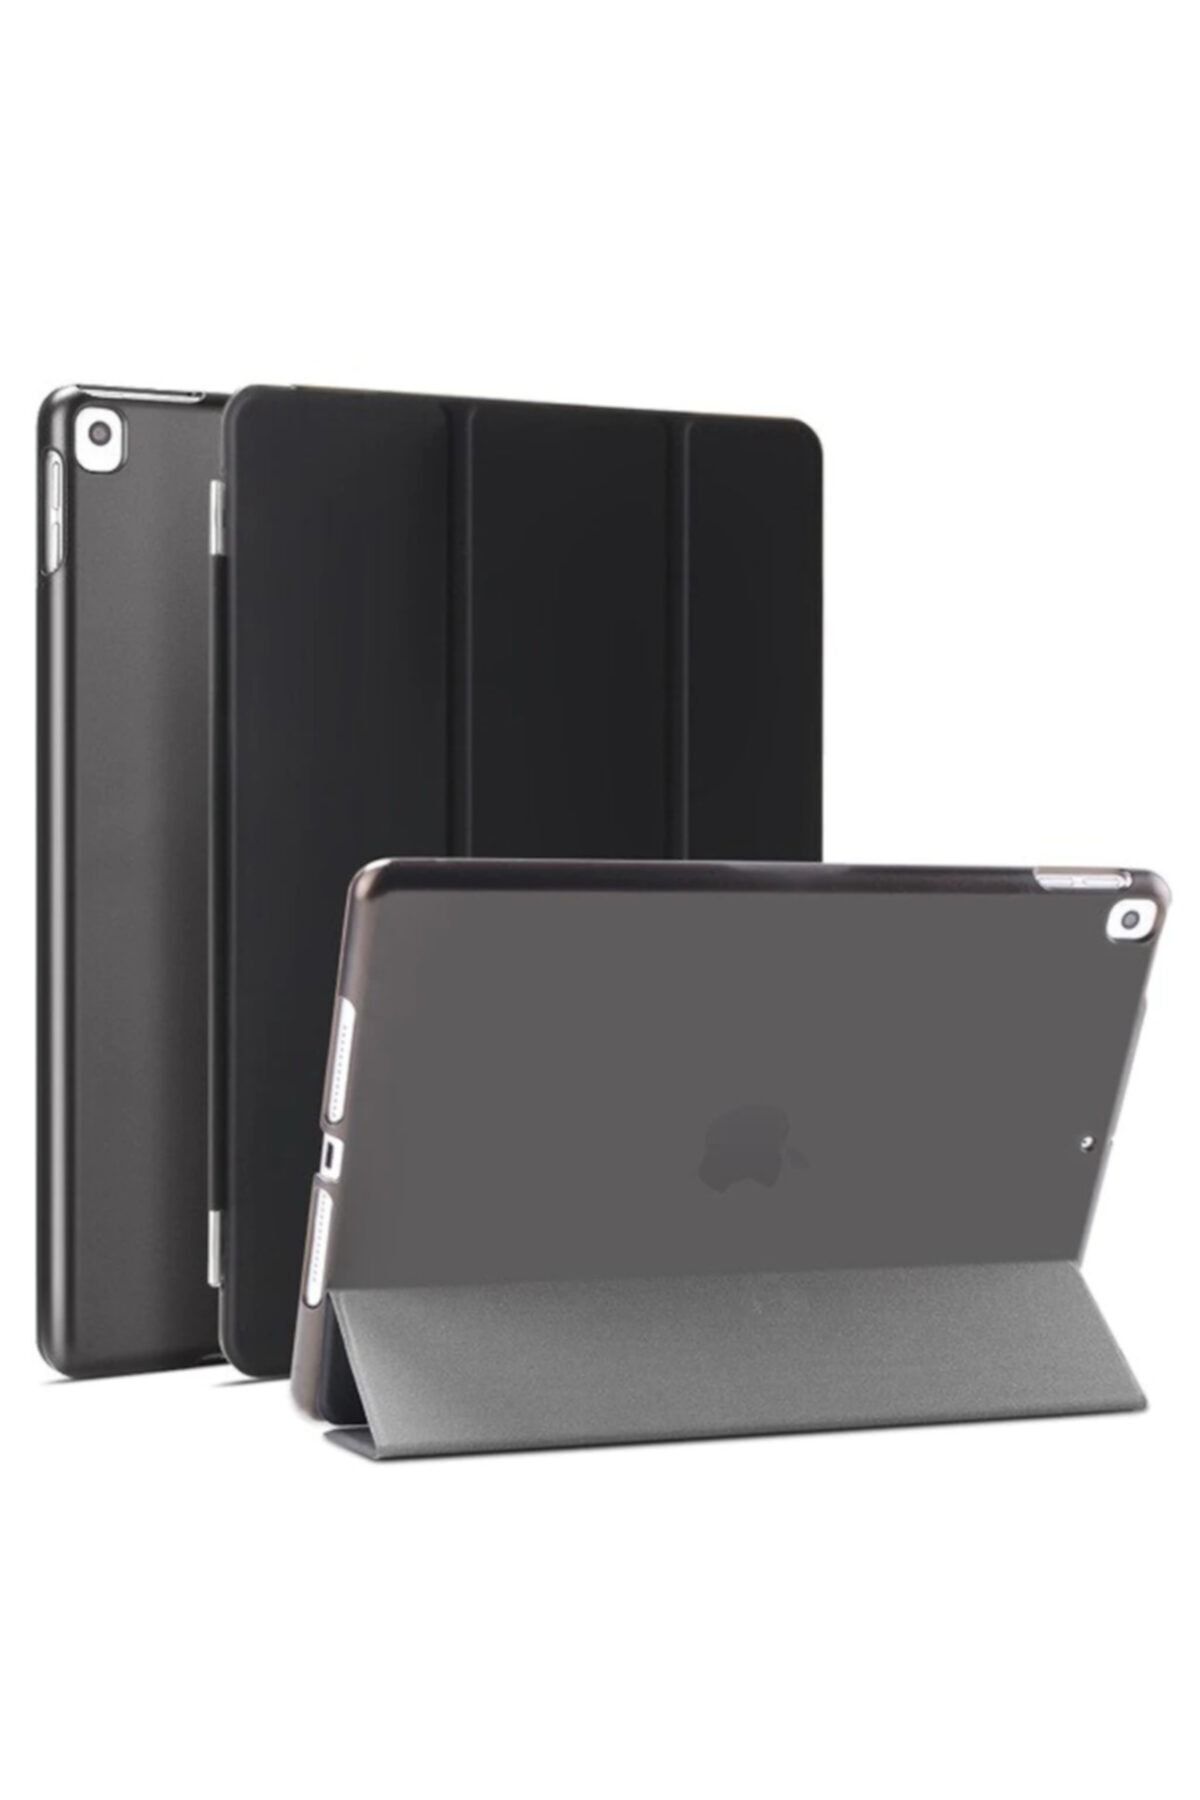 Fibaks Apple Ipad Air 2 (2014) 9.7" Kılıf Smart Cover Katlanabilir Standlı Akıllı Kapak